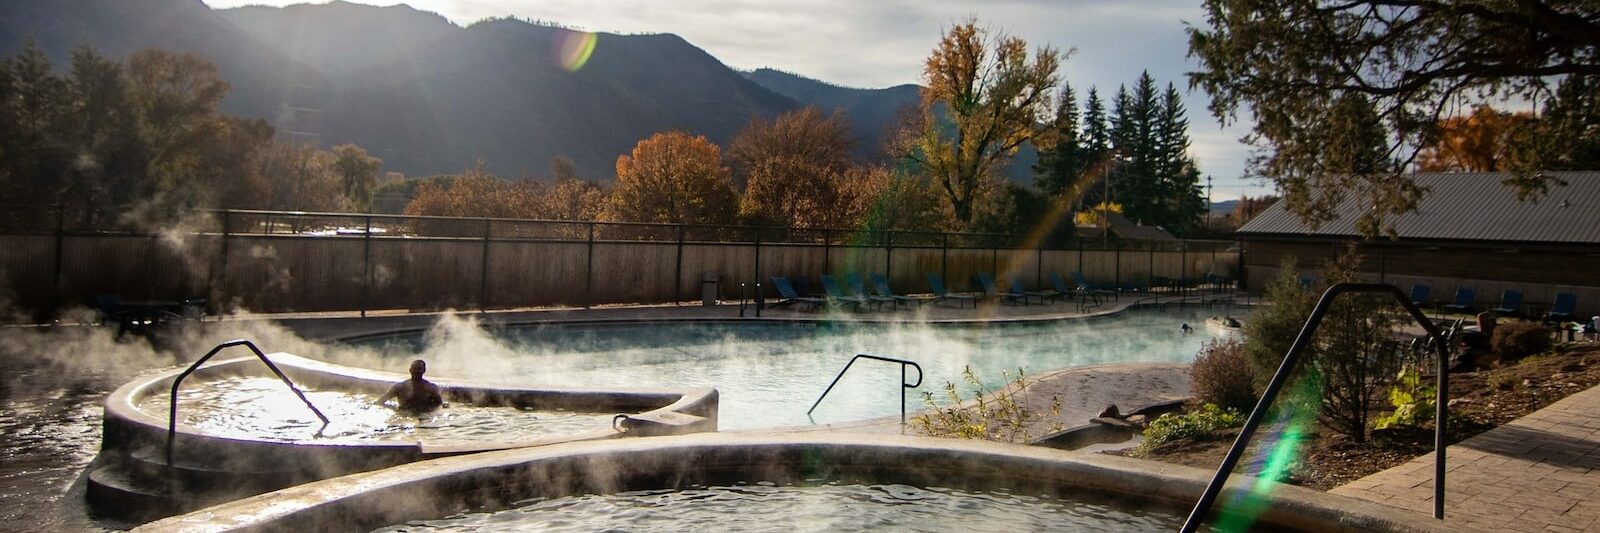 Durango Hot Springs Resort & Spa